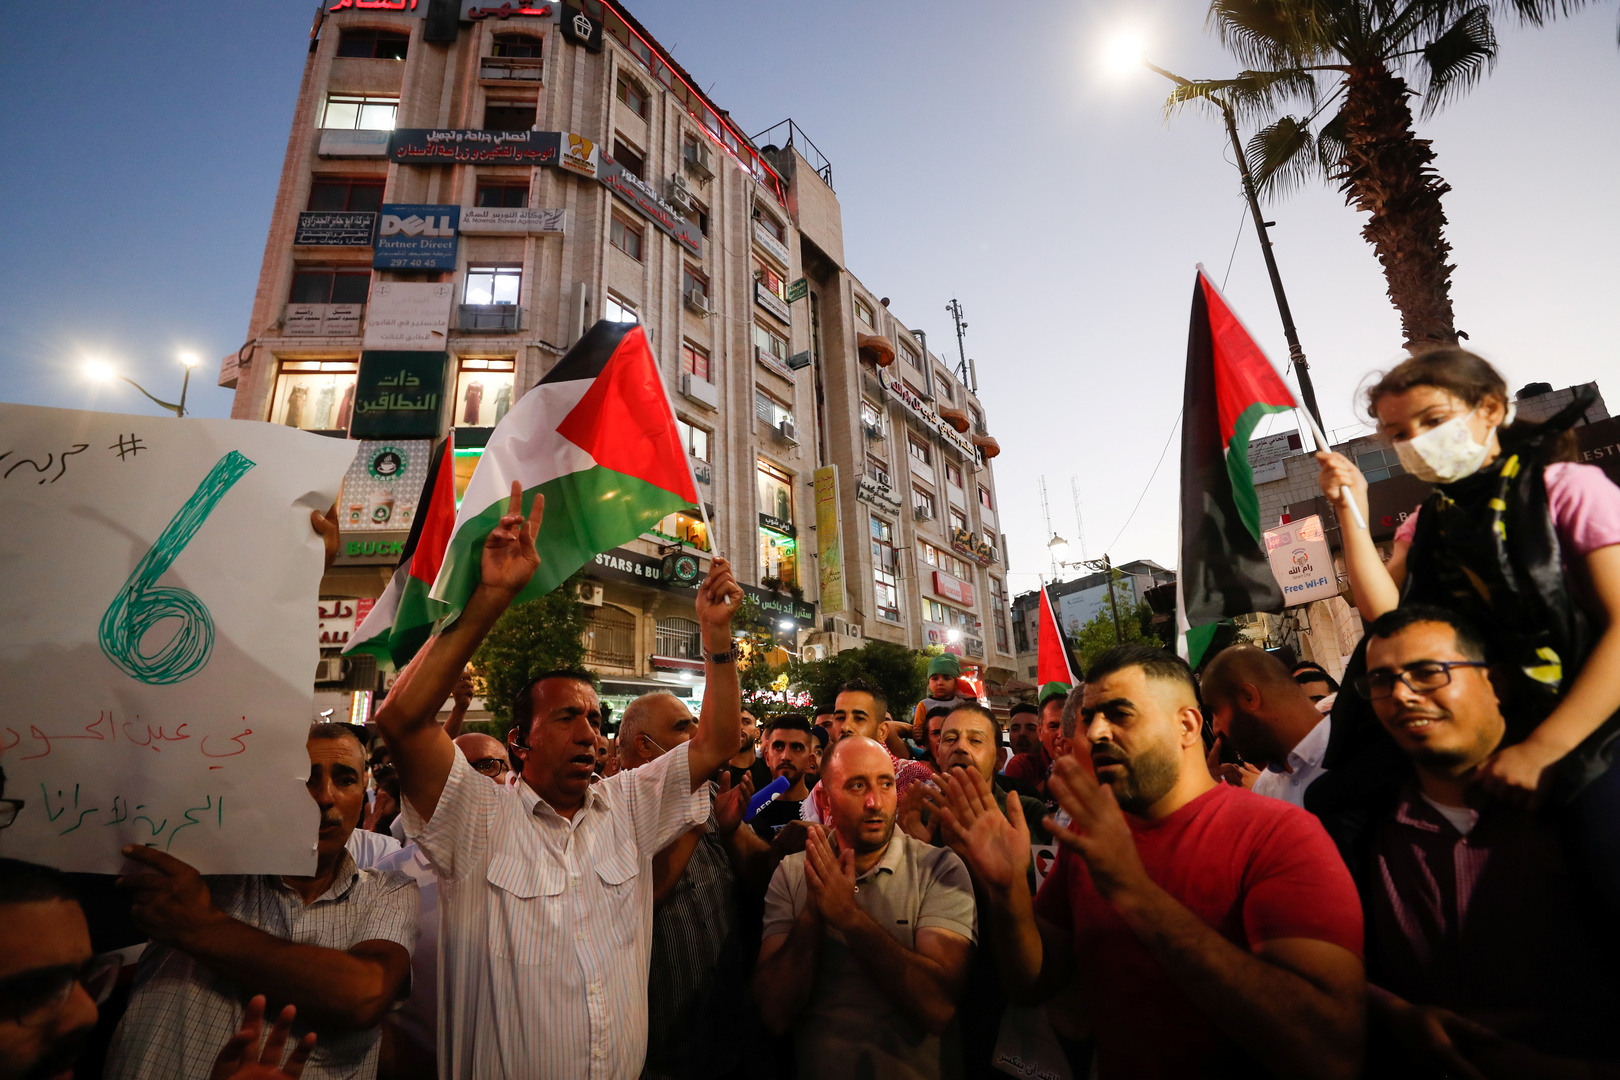 مظاهرات إسناد للأسرى ومسيرات على نقاط التماس لتشتيت الإسرائيليين عن ملاحقة الأسيرين الفارين (فيديو)